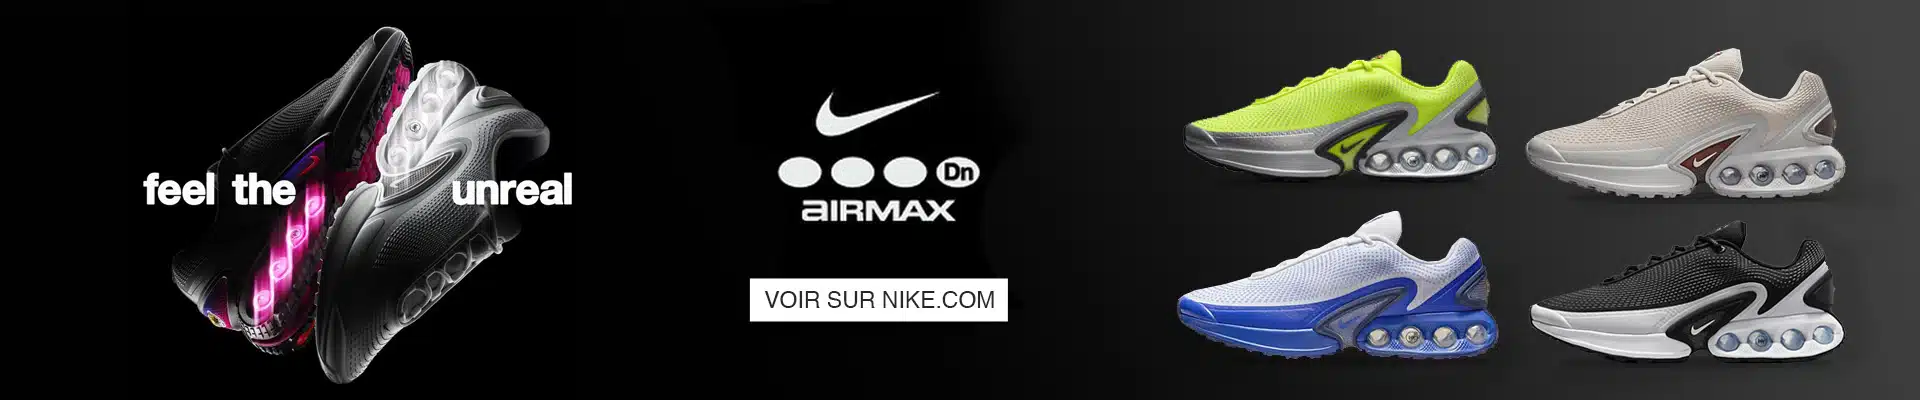 Nike leopard Air Max Dn